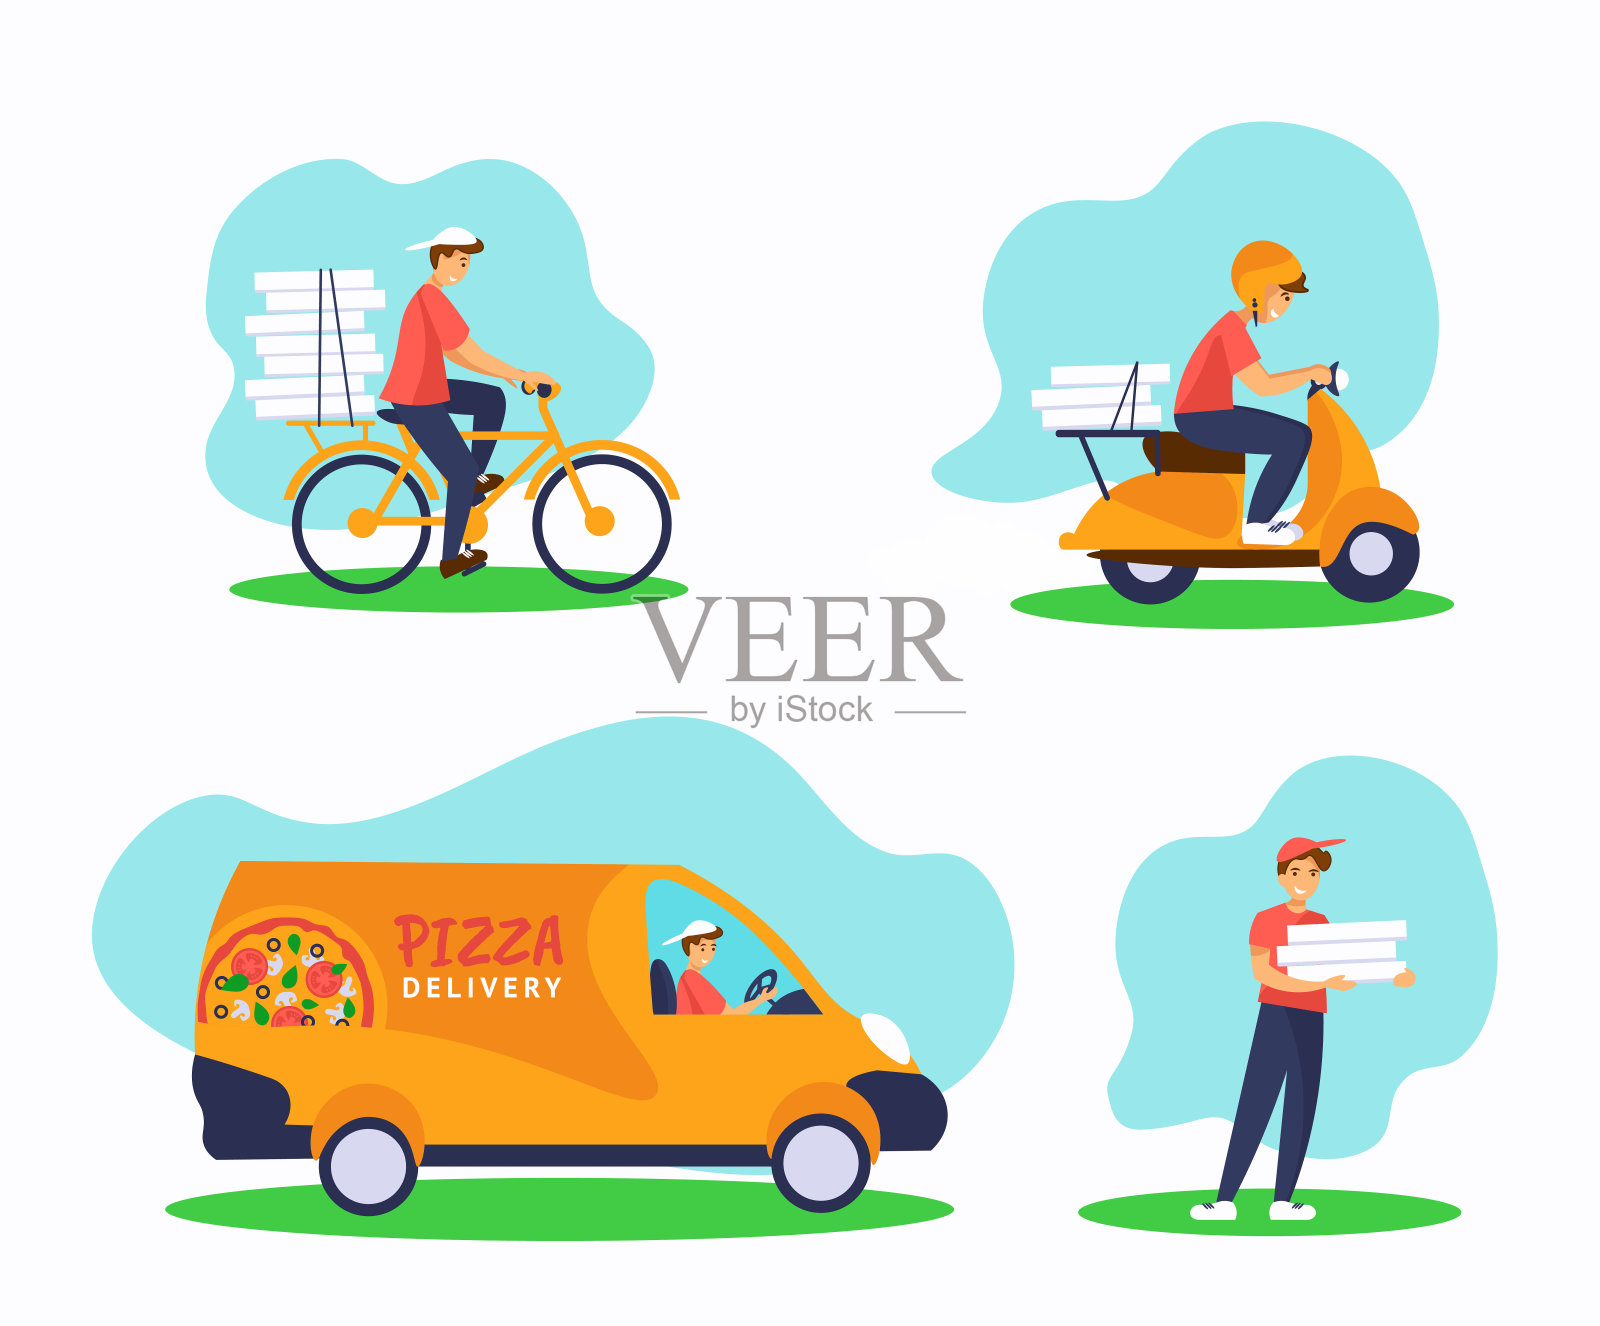 速递披萨服务说明套装:自行车、滑板车、货车、快递配披萨盒插画图片素材